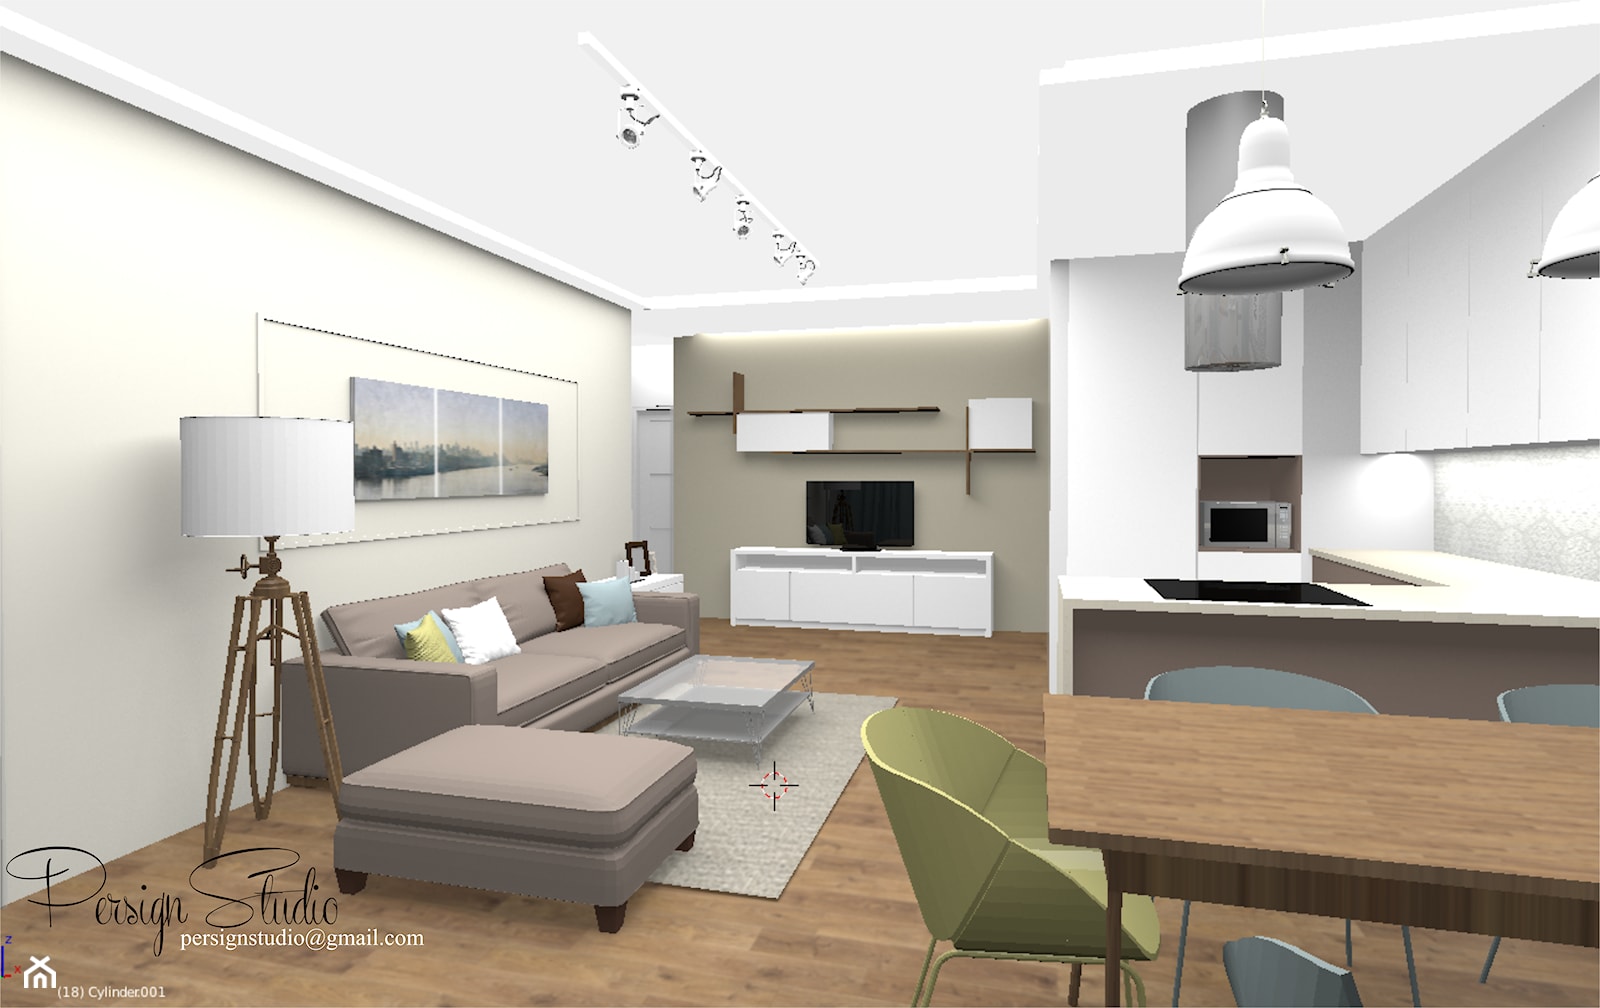 73m2 - apartament w ciepłej kolorystyce - salon - projekt - zdjęcie od PersignStudio - spersonalizowane projekty wnętrz - Homebook